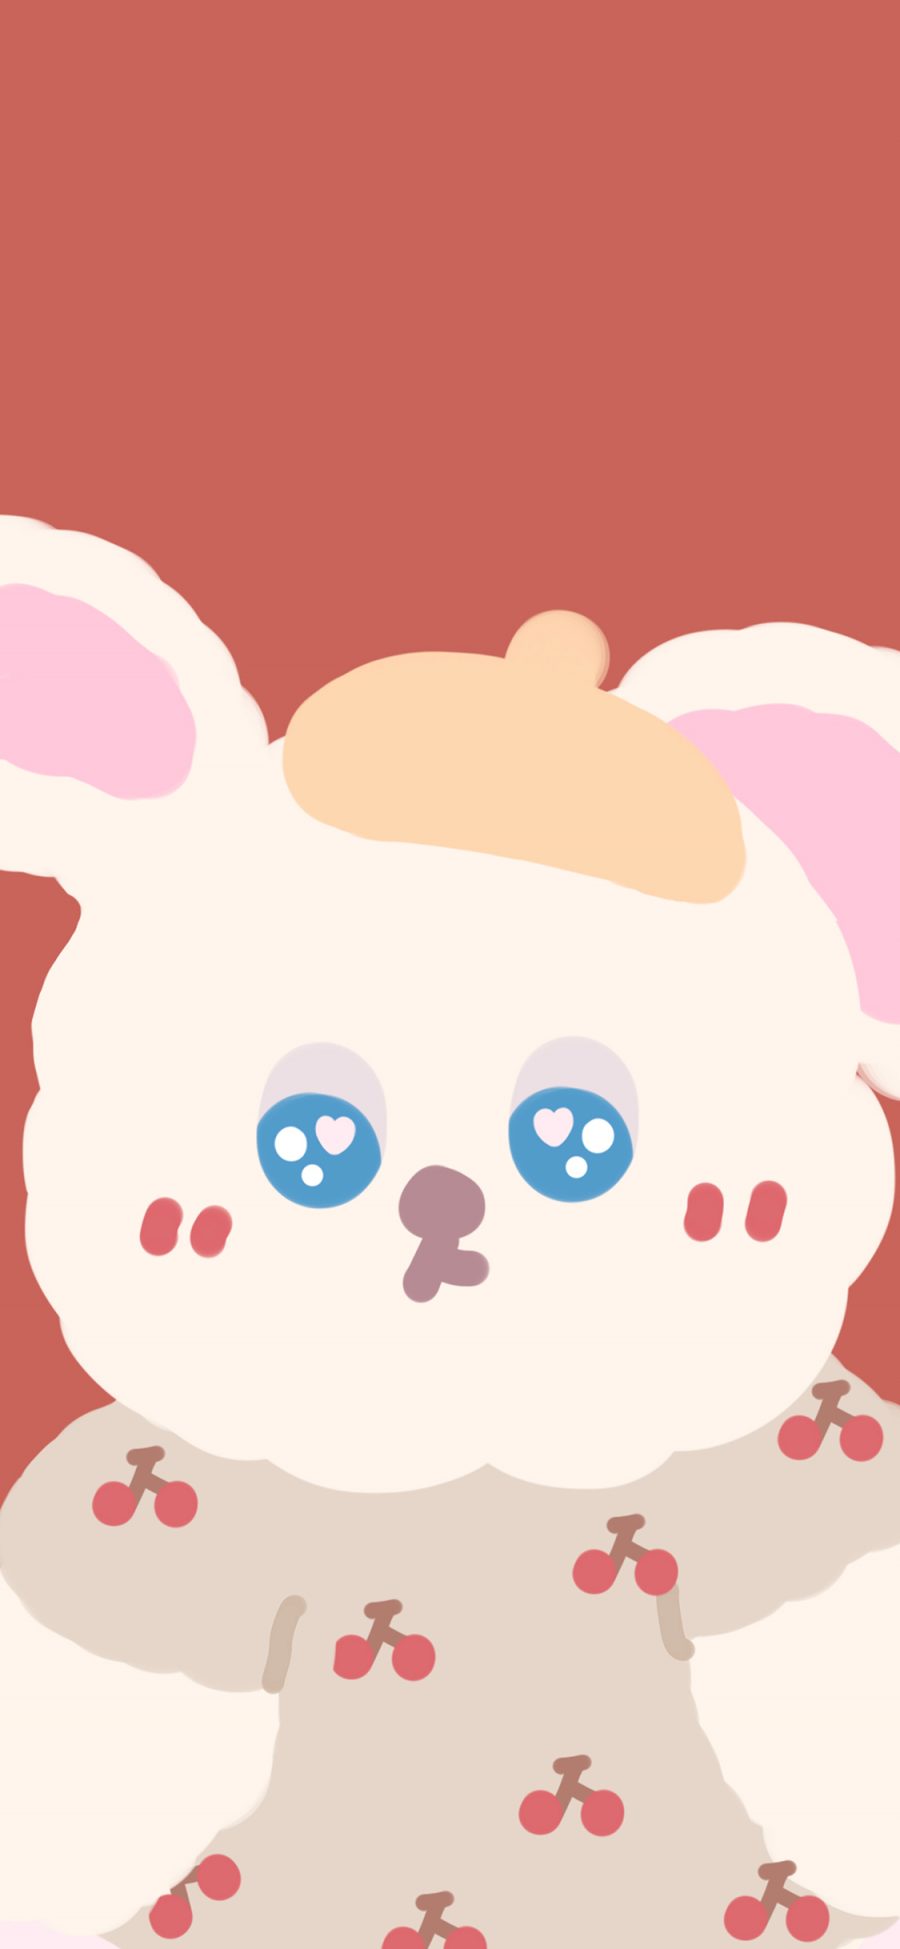 [2436×1125]兔子 卡通 可爱 樱桃 苹果手机动漫壁纸图片